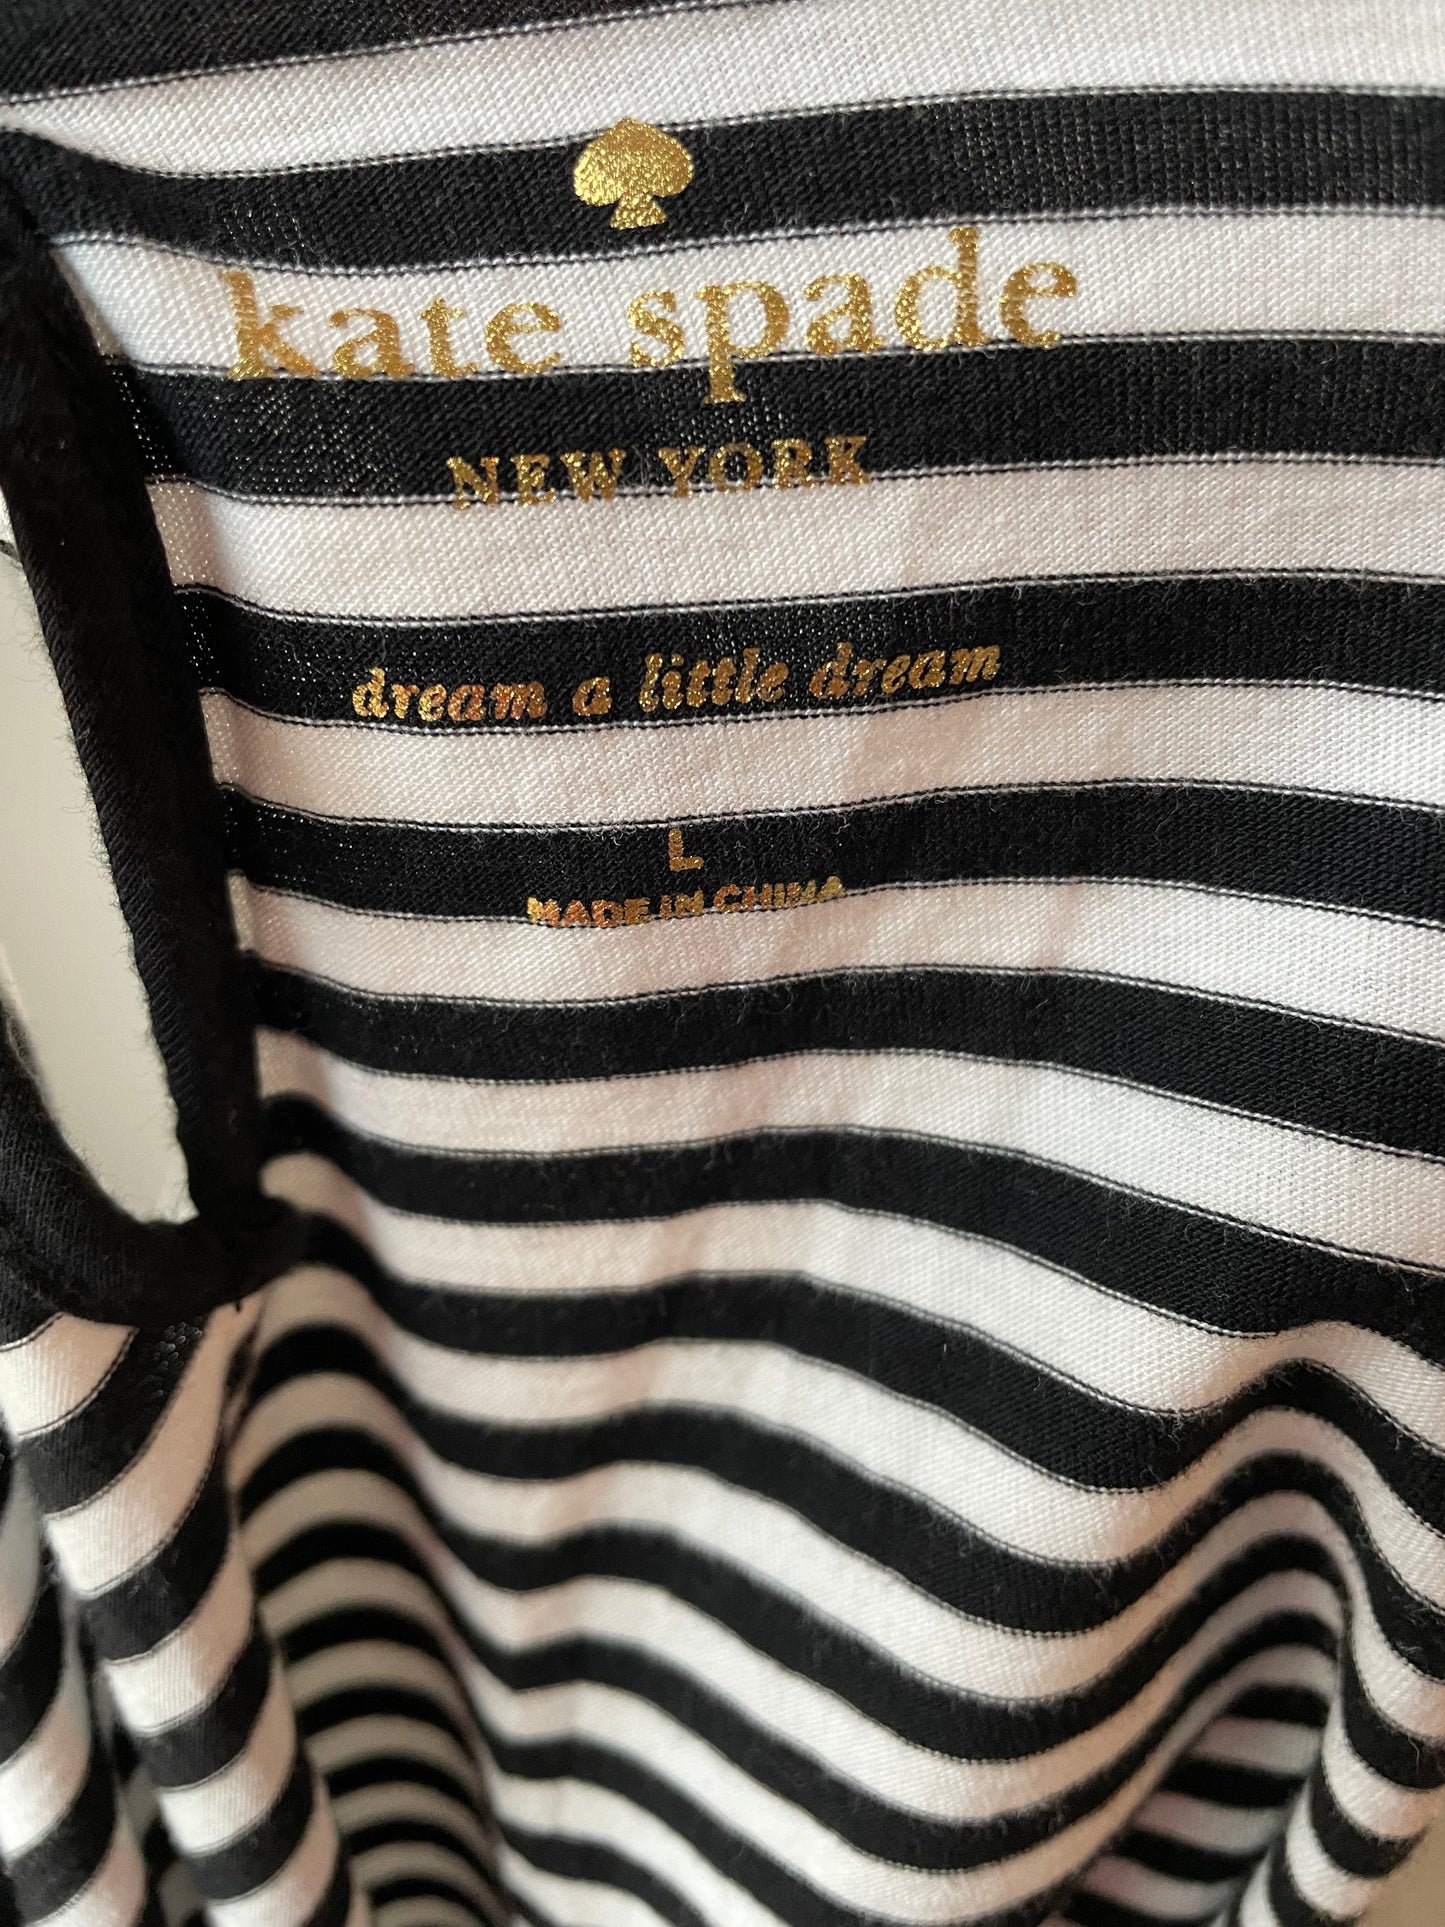 Kate Spade Night Shirt (L)